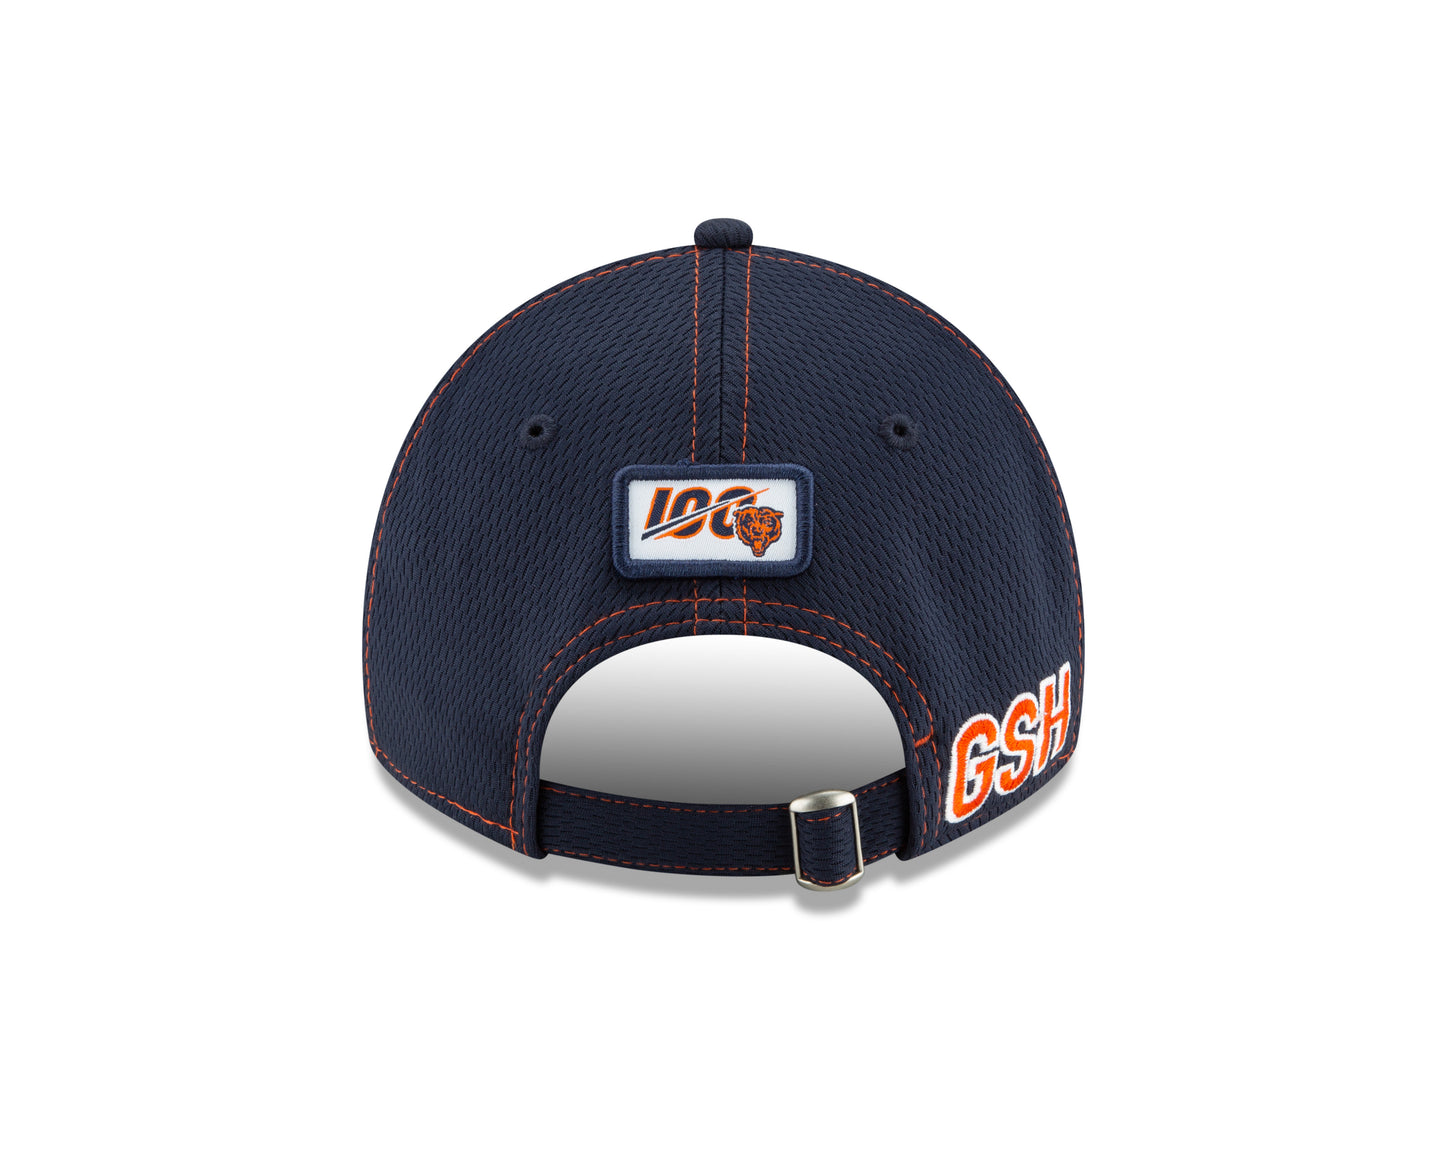 Women's Chicago Bears 2019 Established Collection Sideline Road "B" Logo 9TWENTY Adjustable Flex Hat